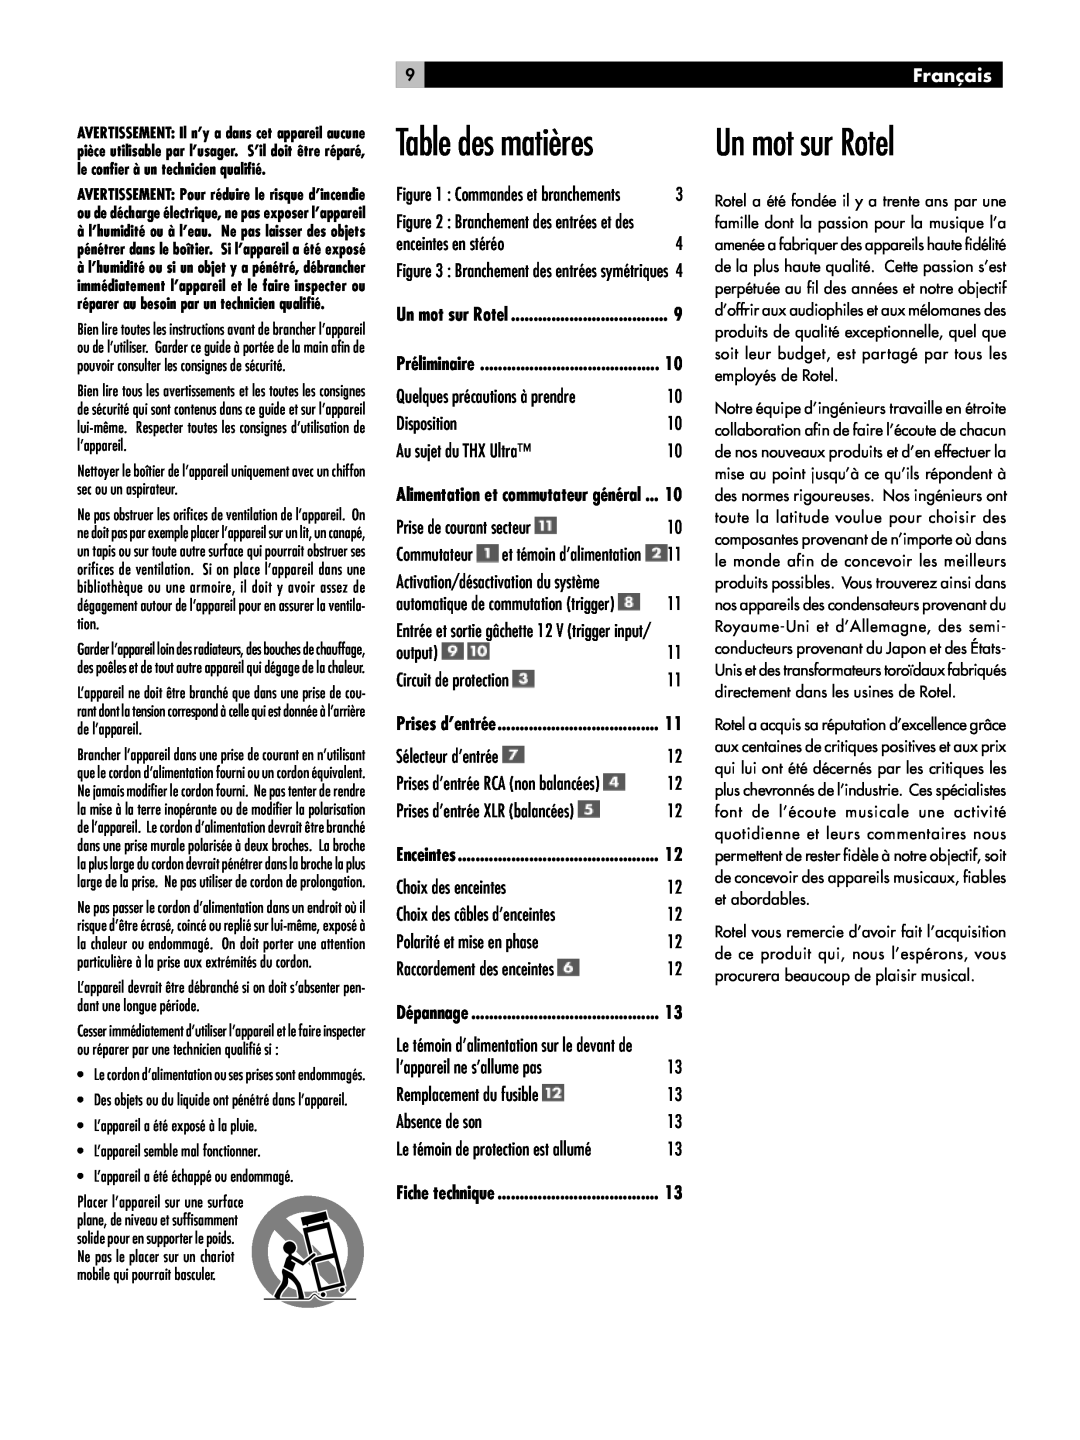 Rotel RMB-1080 owner manual Un mot sur Rotel, Table des matières, 9Français 